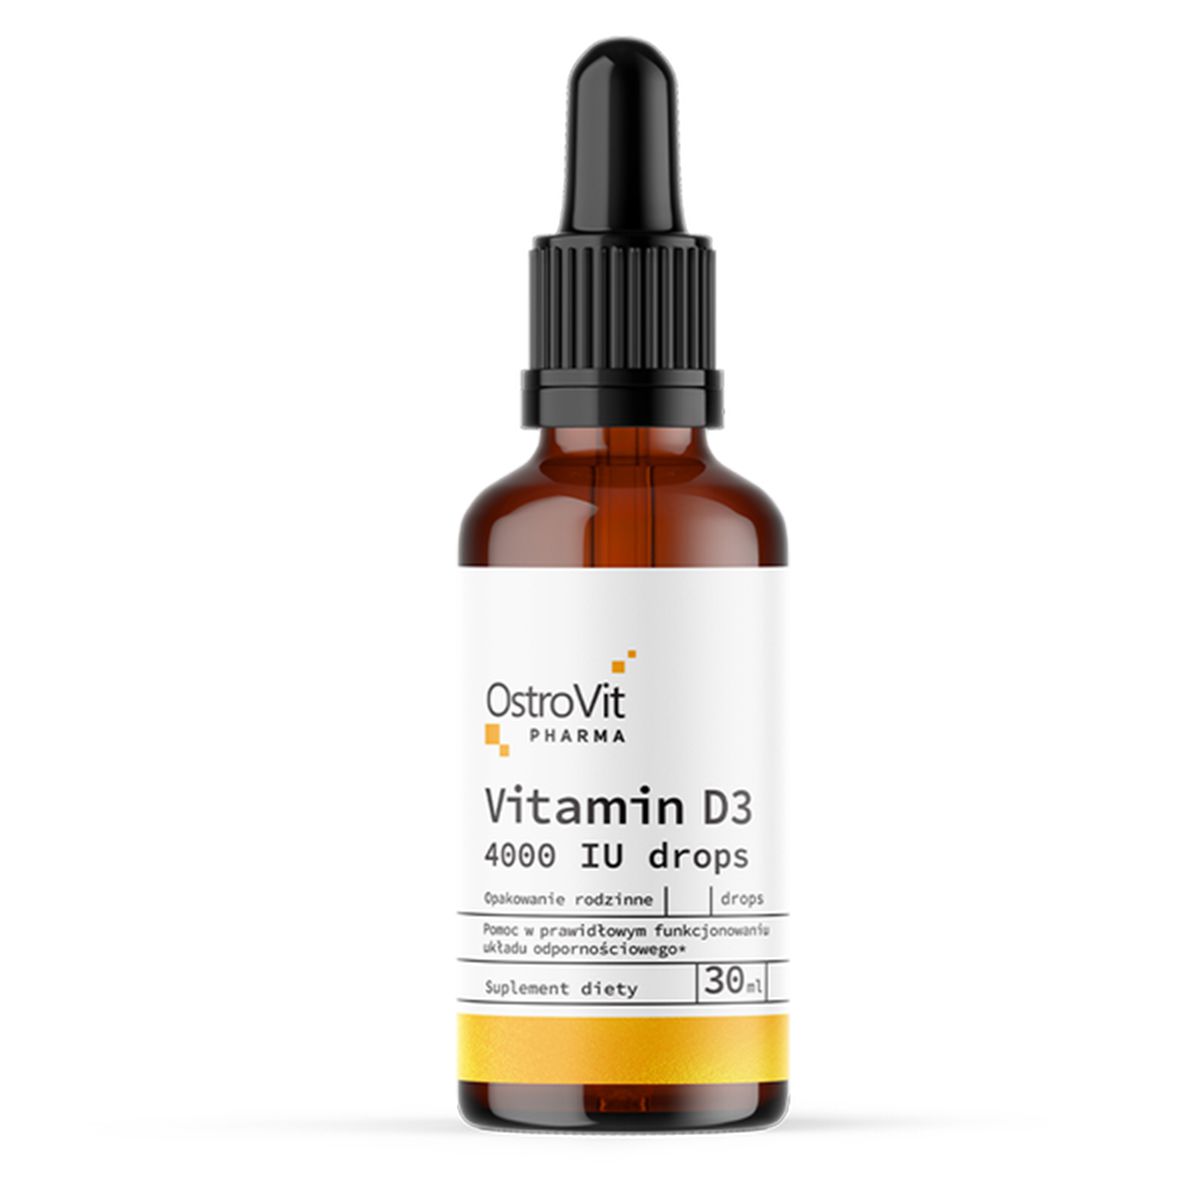 Khi nào nên bắt đầu bổ sung Vitamin D?
